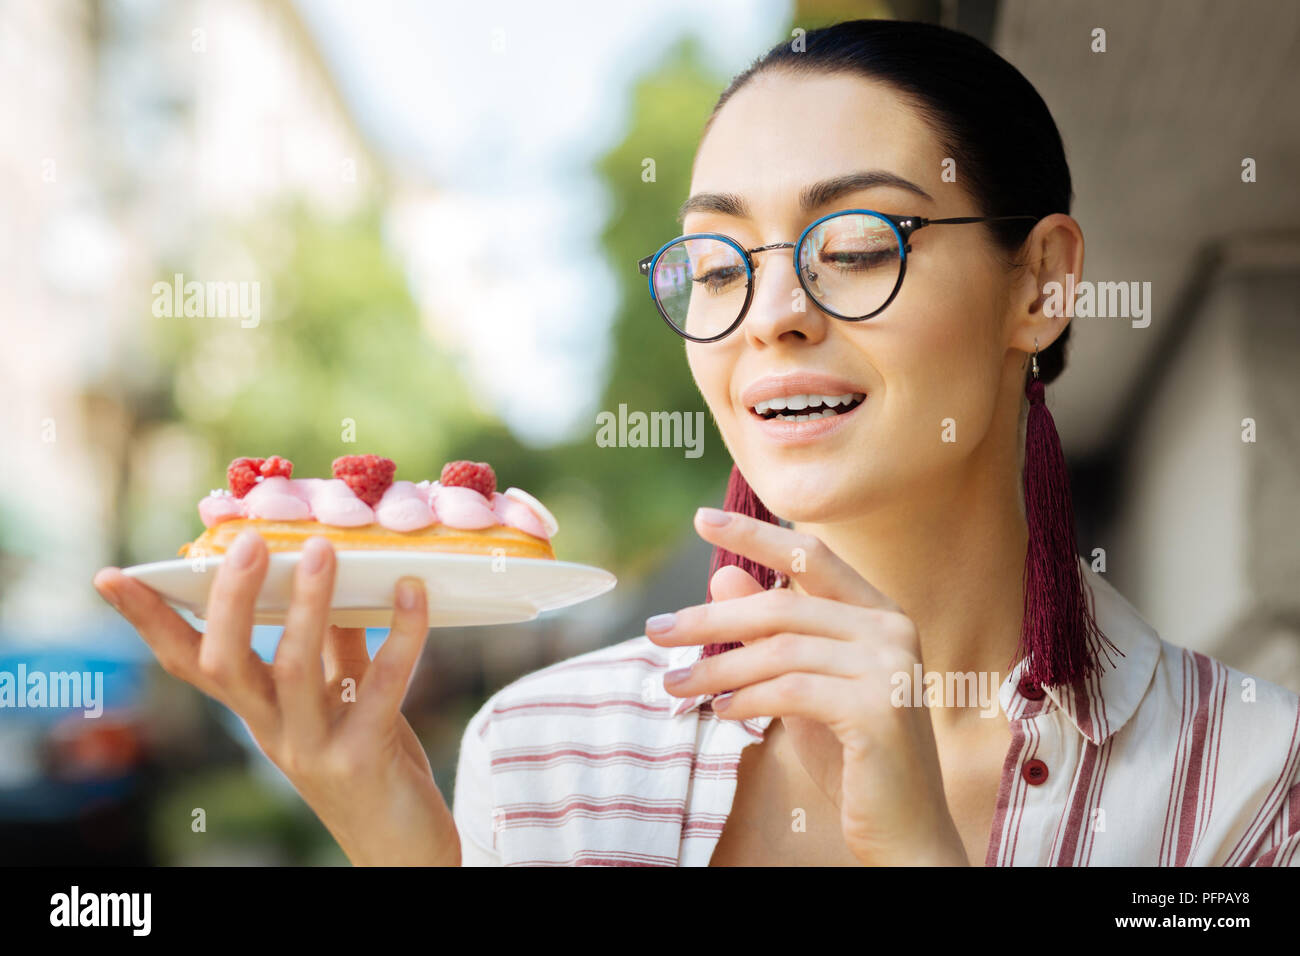 Glücklich lächelnde Frau und ihrem schönen Dessert Stockfoto